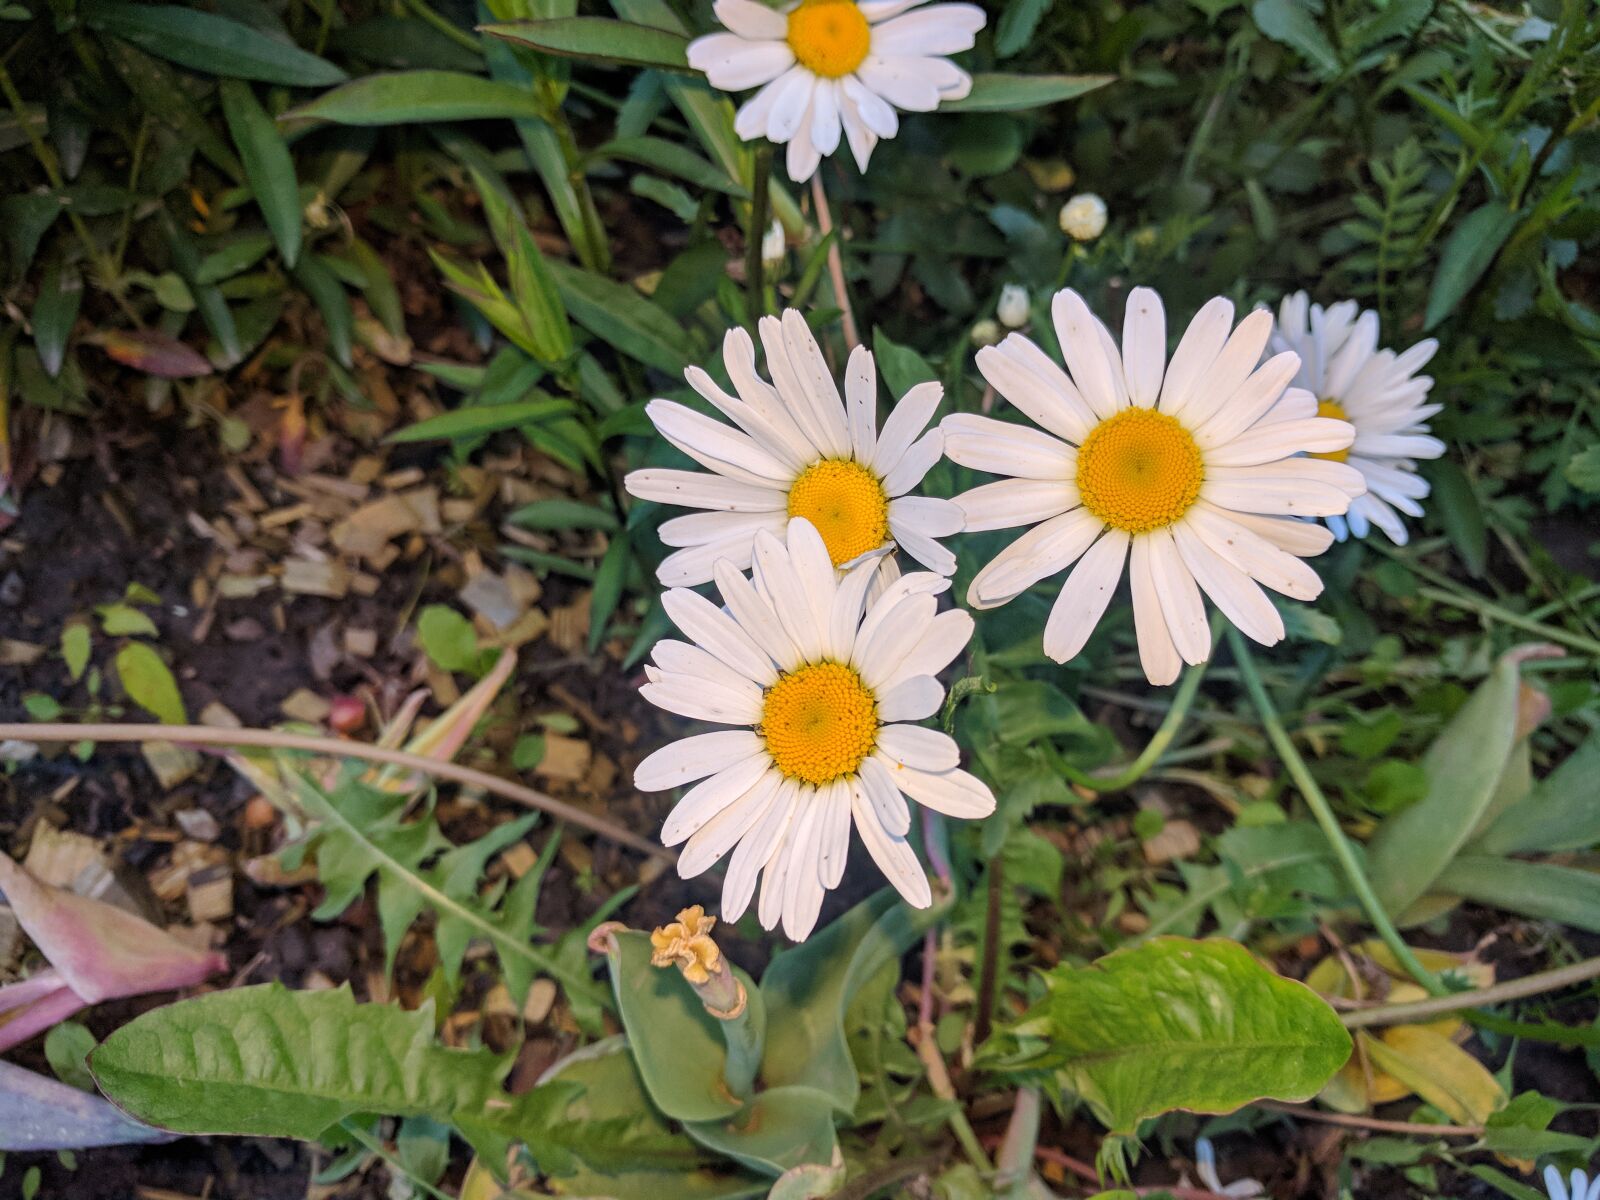 LG Nexus 5X sample photo. Daisy, daisy flowers, nature photography